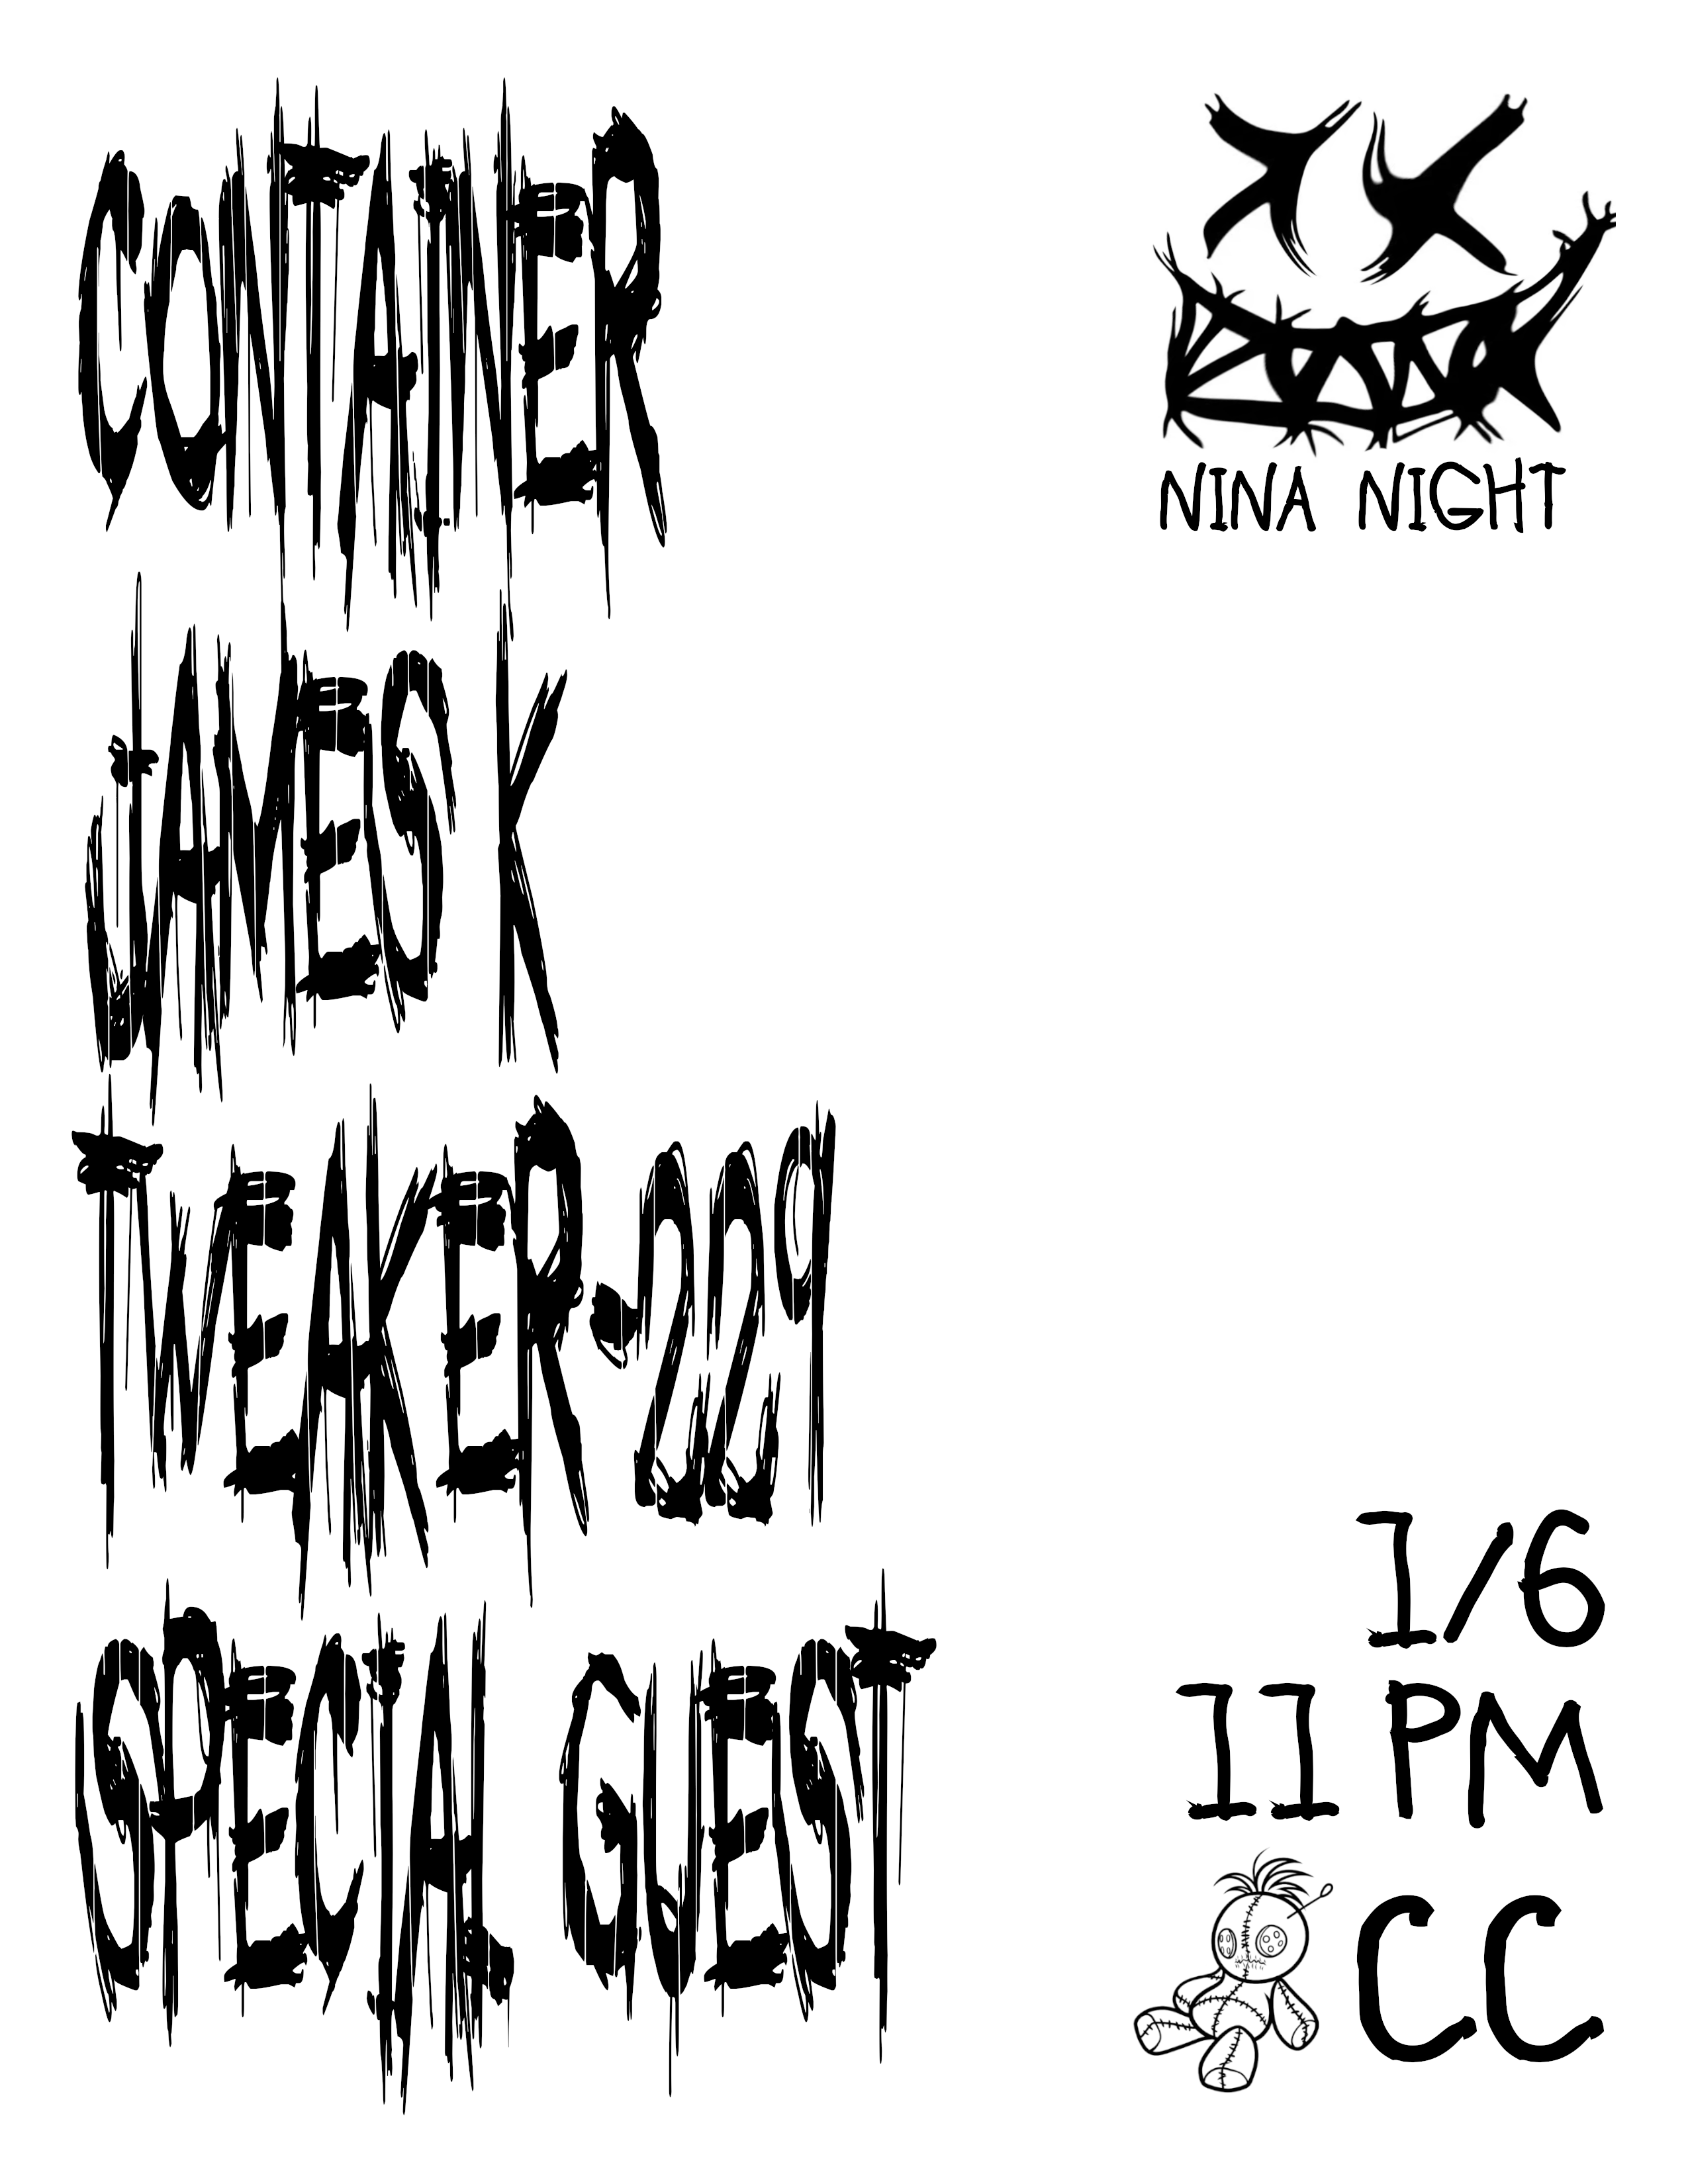 Nina Night: Container, James K, Tweaker-229 & Special Guest - フライヤー表